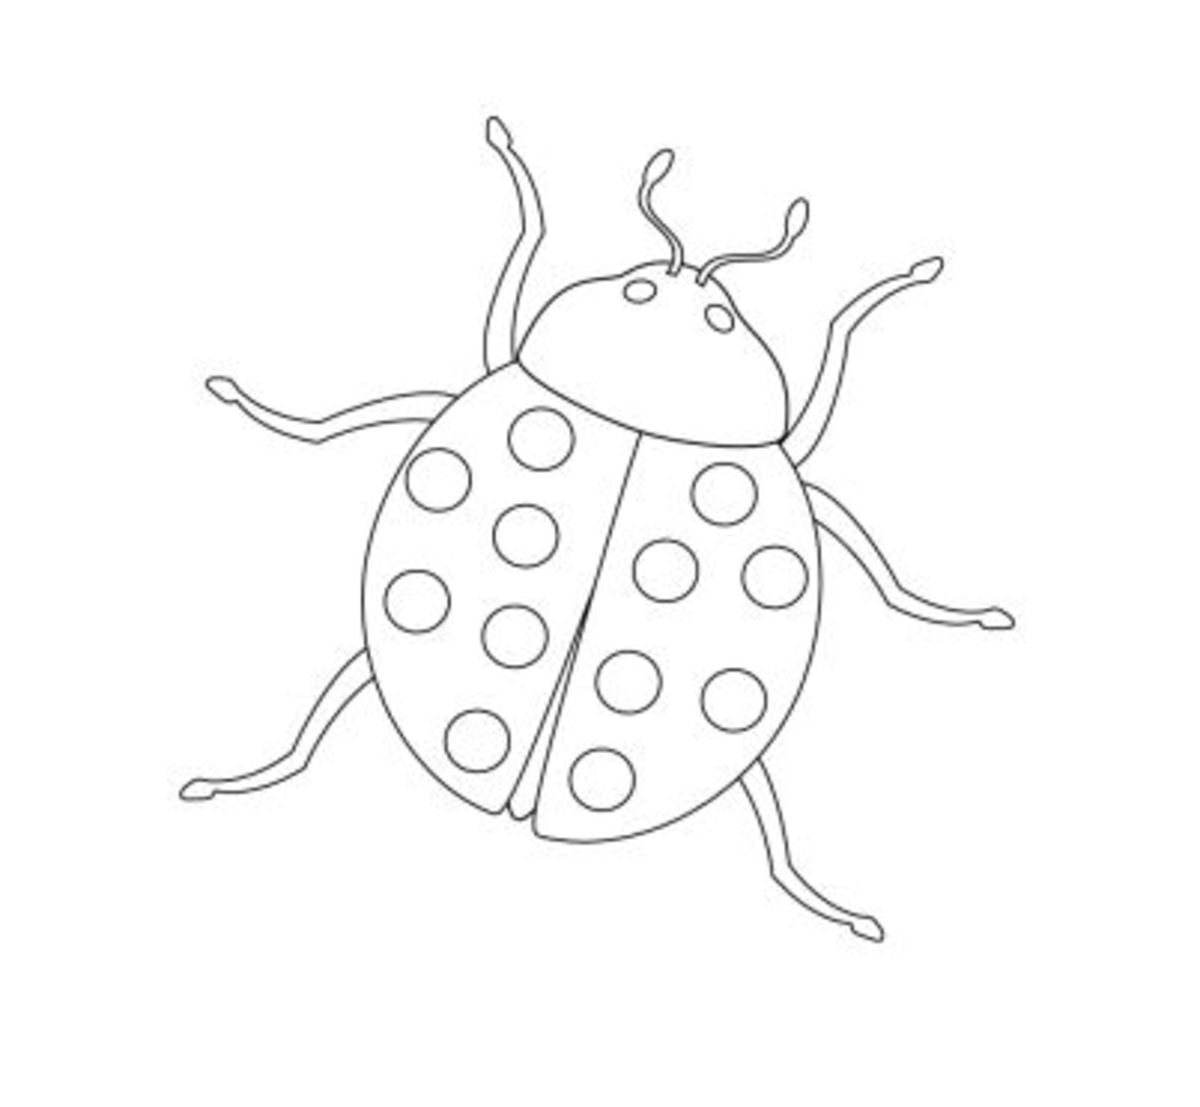 Трафарет насекомых для рисования